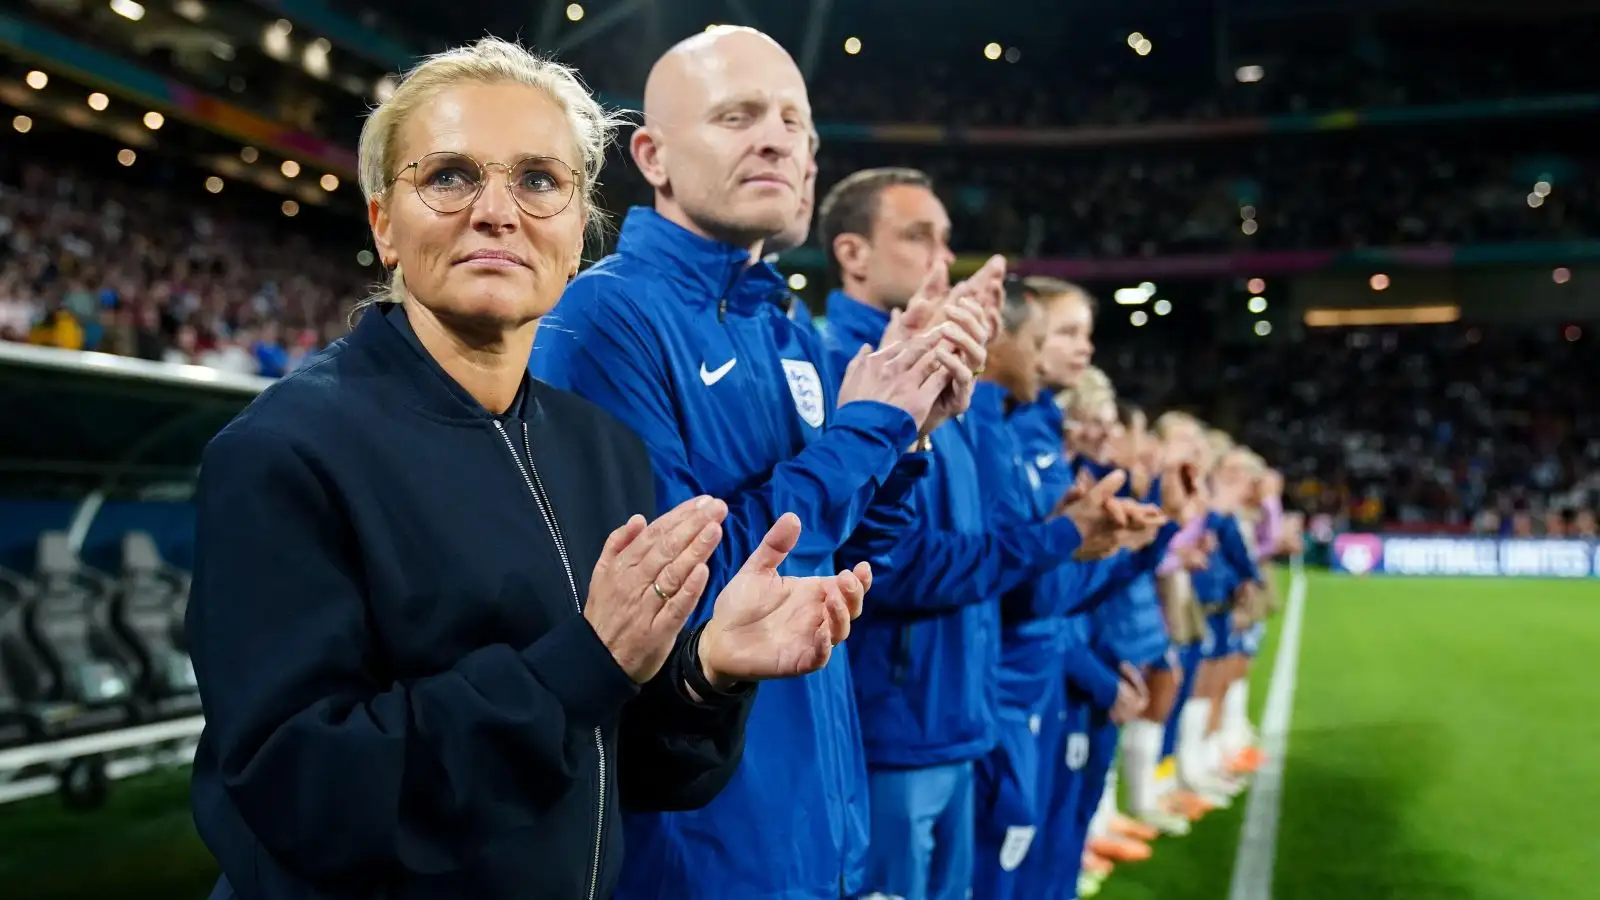 Sarina Wiegman applauds before a World Cup match.